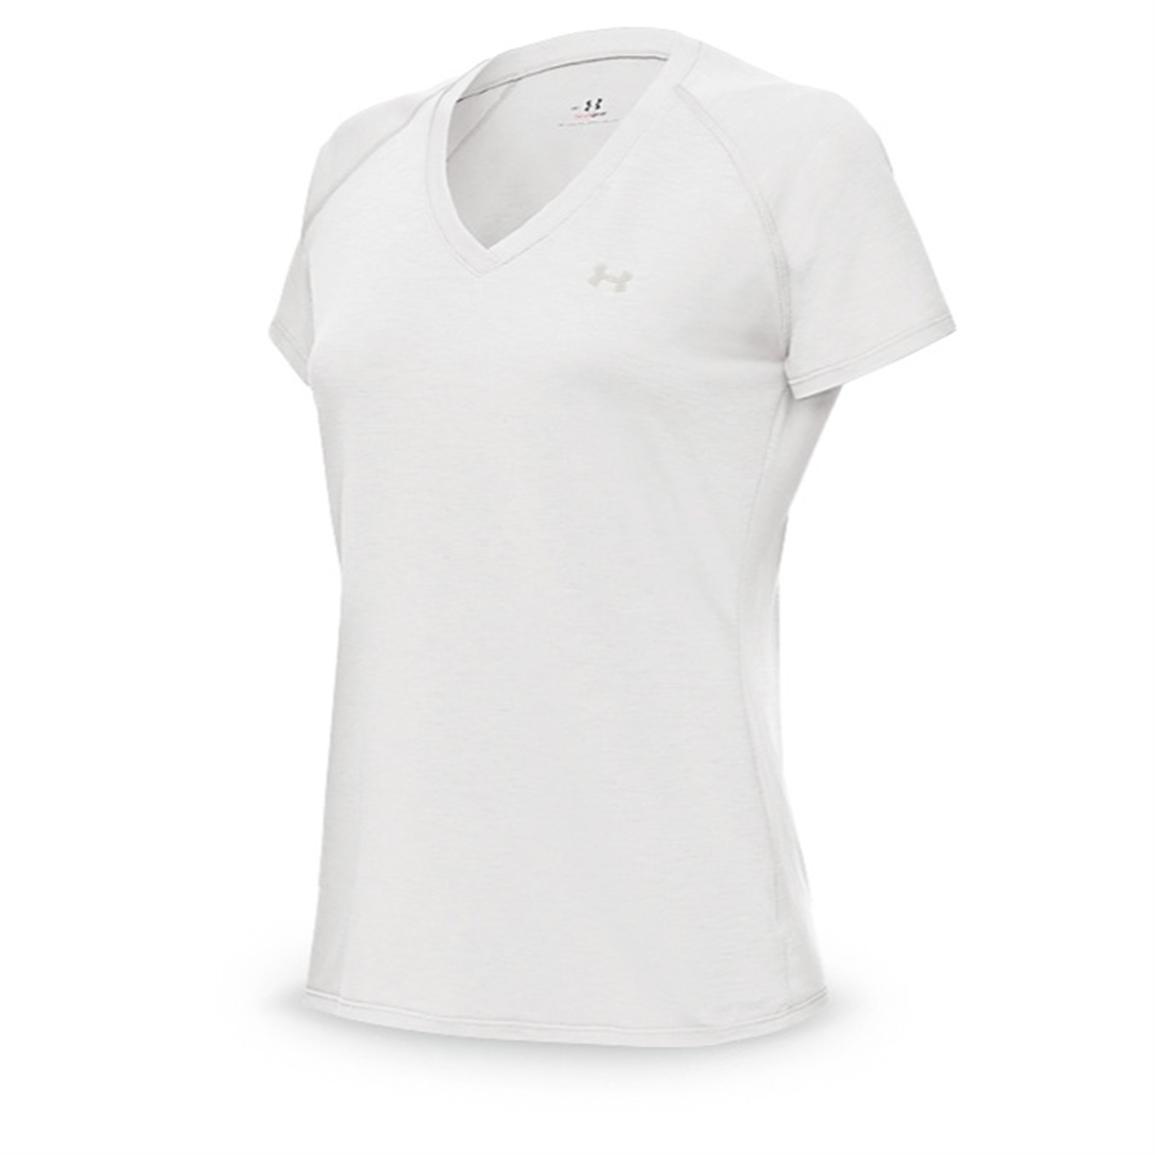 Women's Under Armour® Tech™ T - shirt - 201167, Shirts & Tops at ...